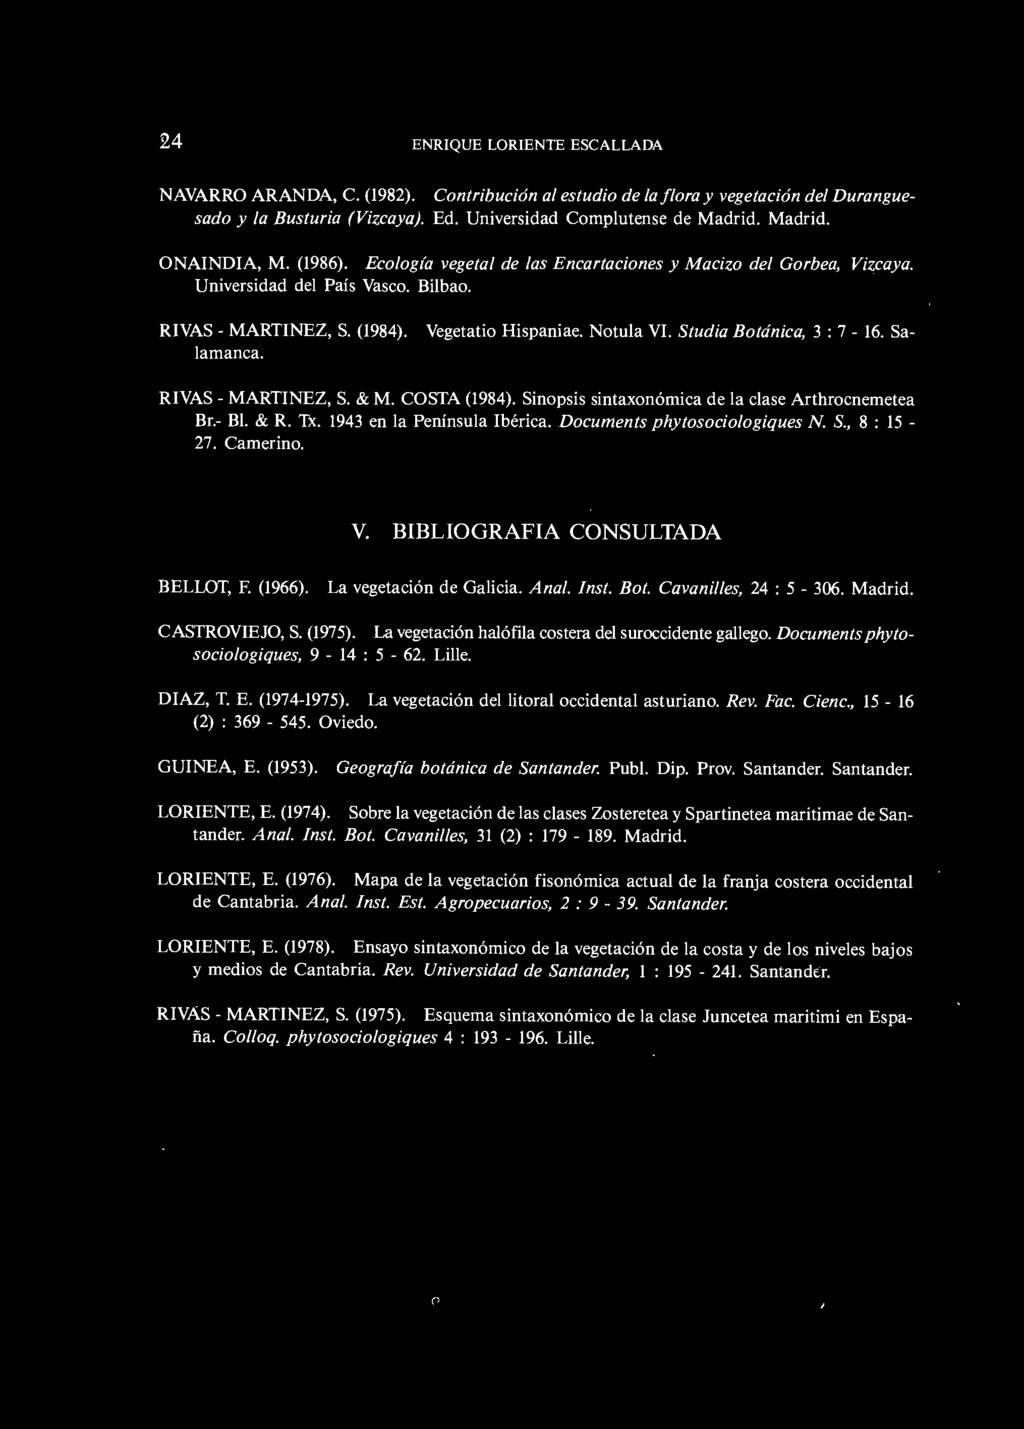 (1984). lamanca. RIVAS - MARTINEZ, S. & M. COSTA (1984). Sinopsis sintaxonómica de la clase Arthrocnemetea Br.- 81. & R. Tx. 1943 en la Península Ibérica. Documents phytosociologiques N. S., 8 : 15-27.